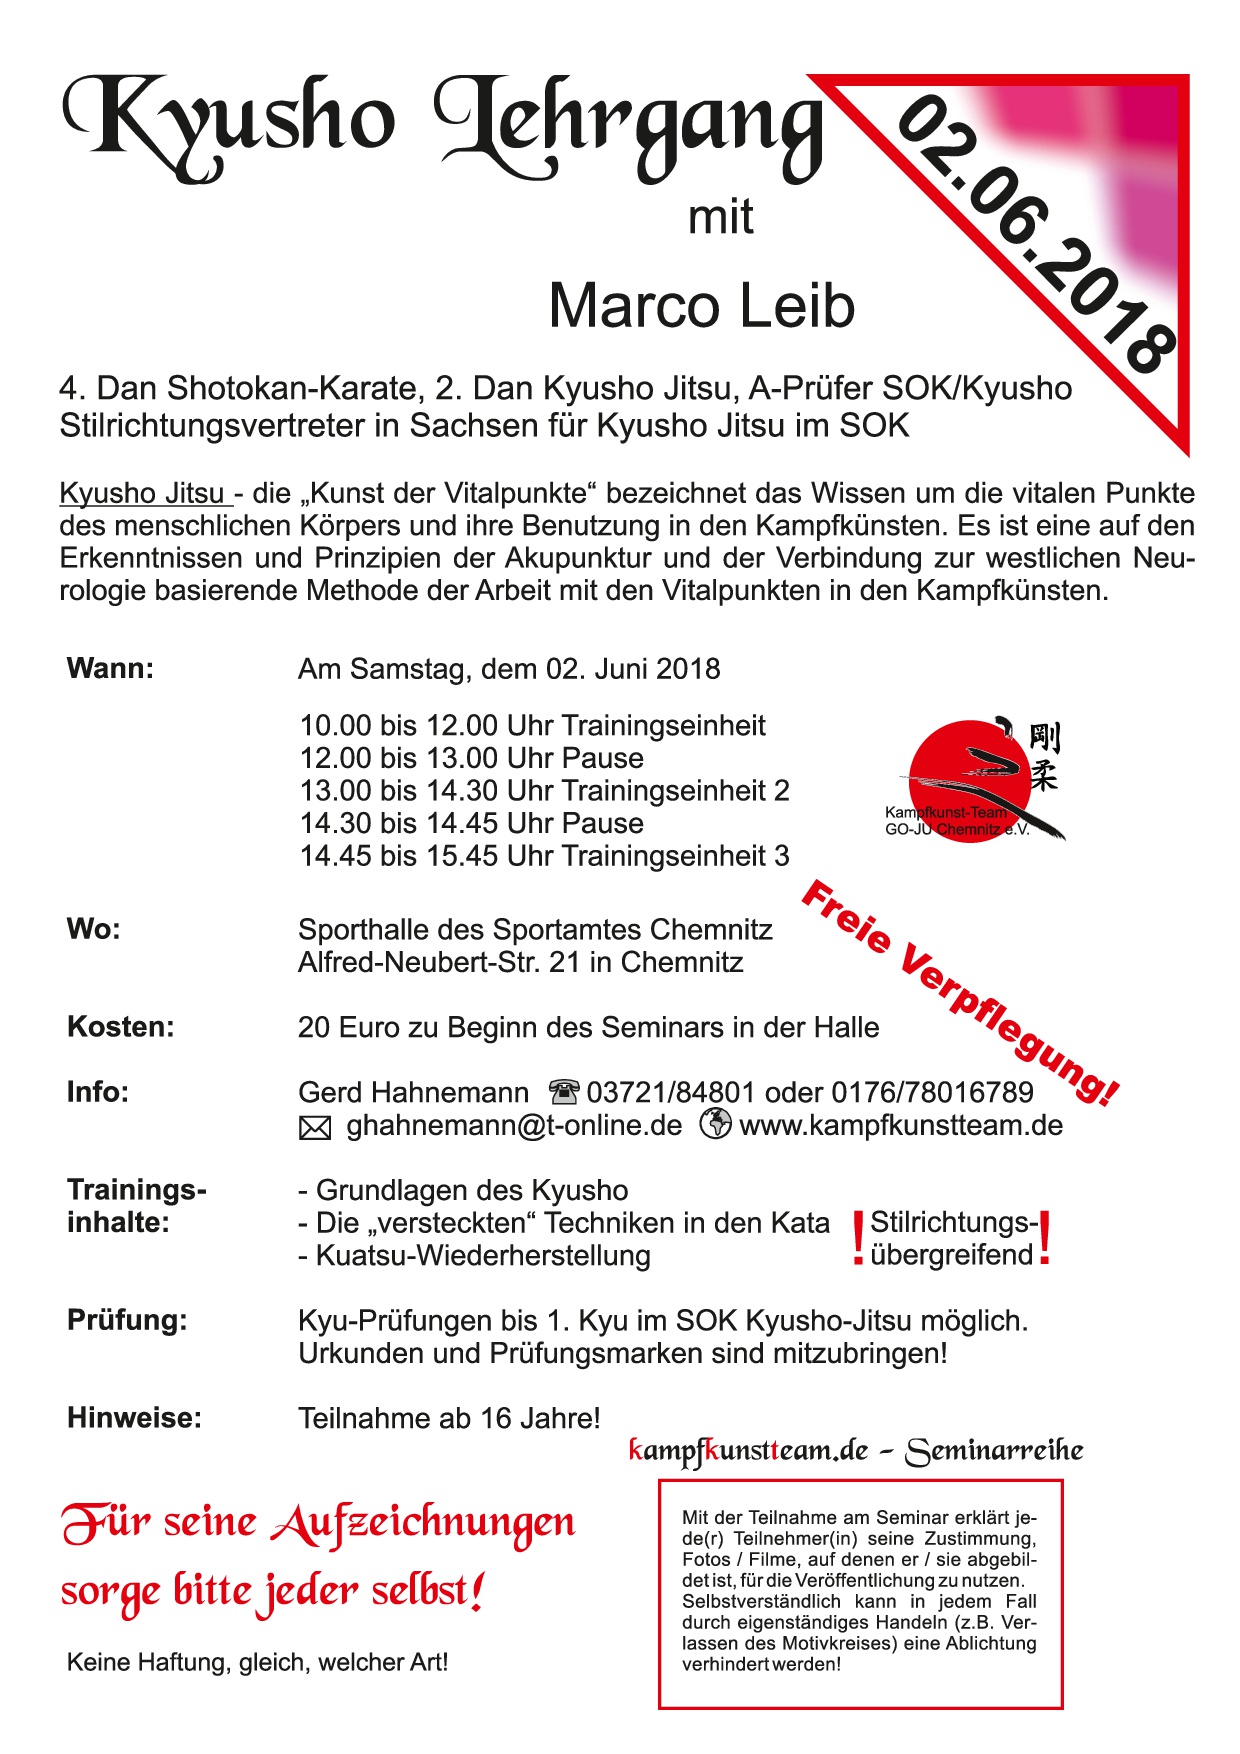 2018 06 02 Seminar2 Marco Leib 2018 1